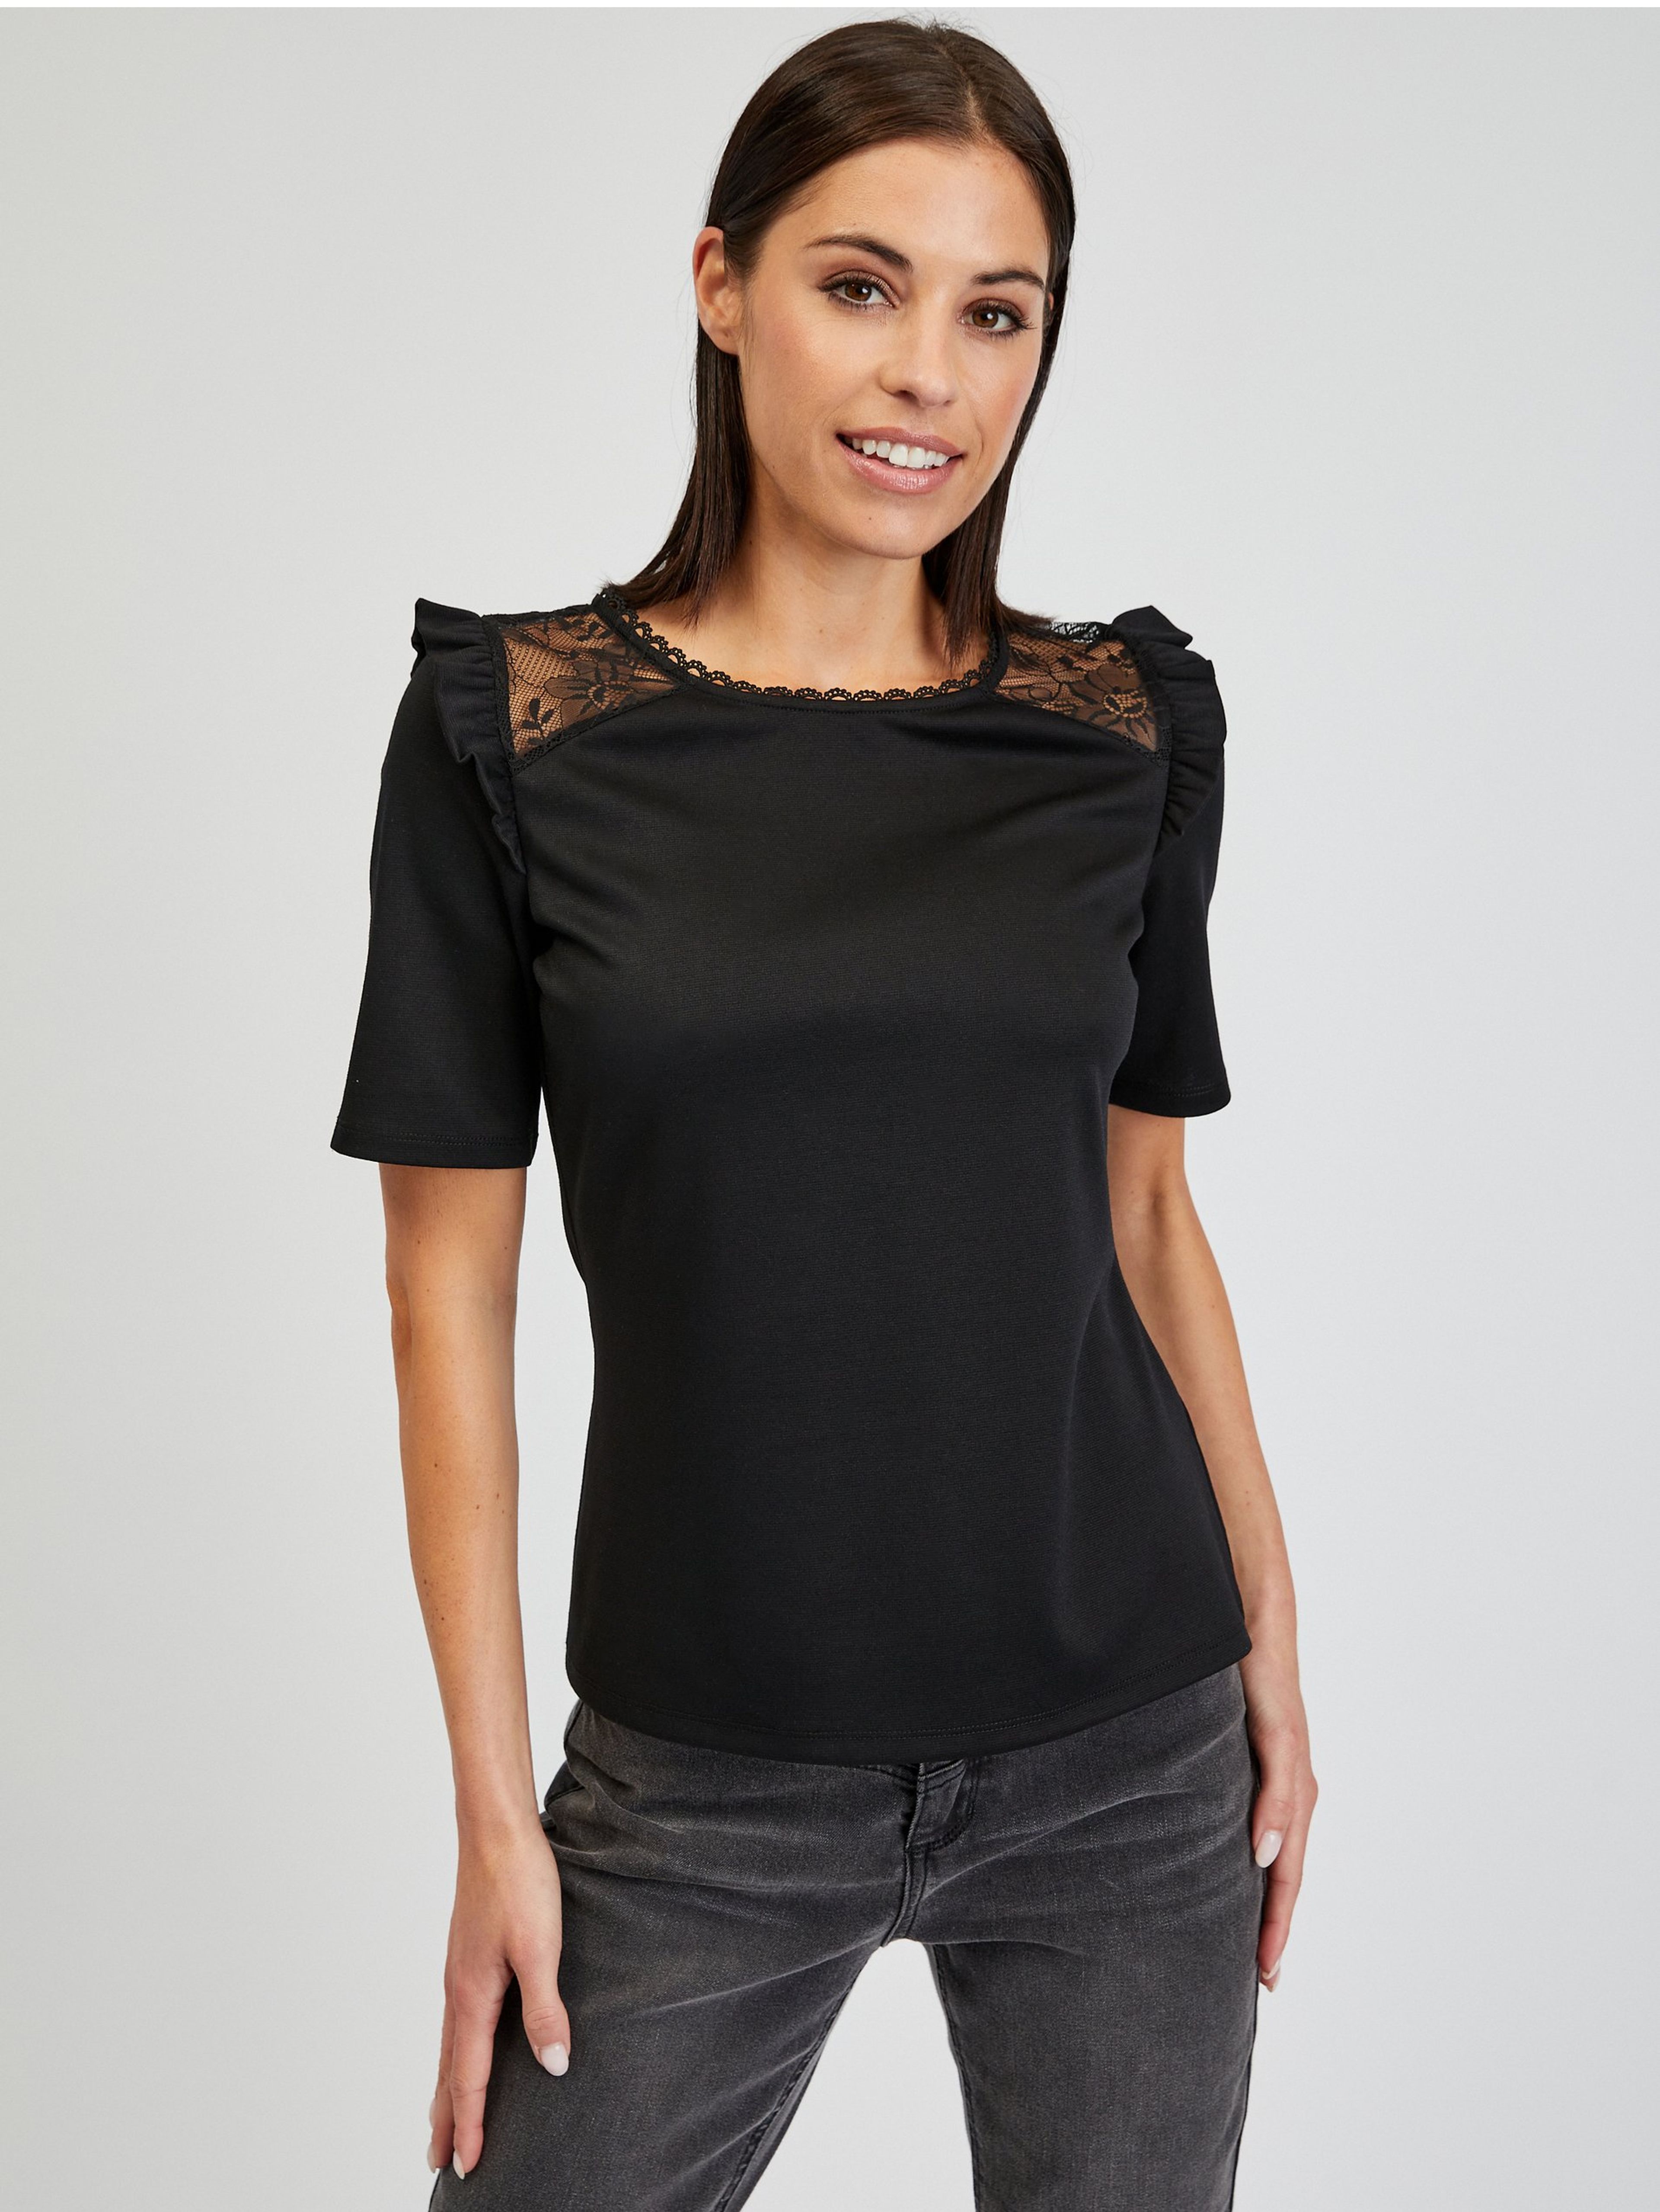 Černé dámské tričko s průstřihem na zádech ORSAY